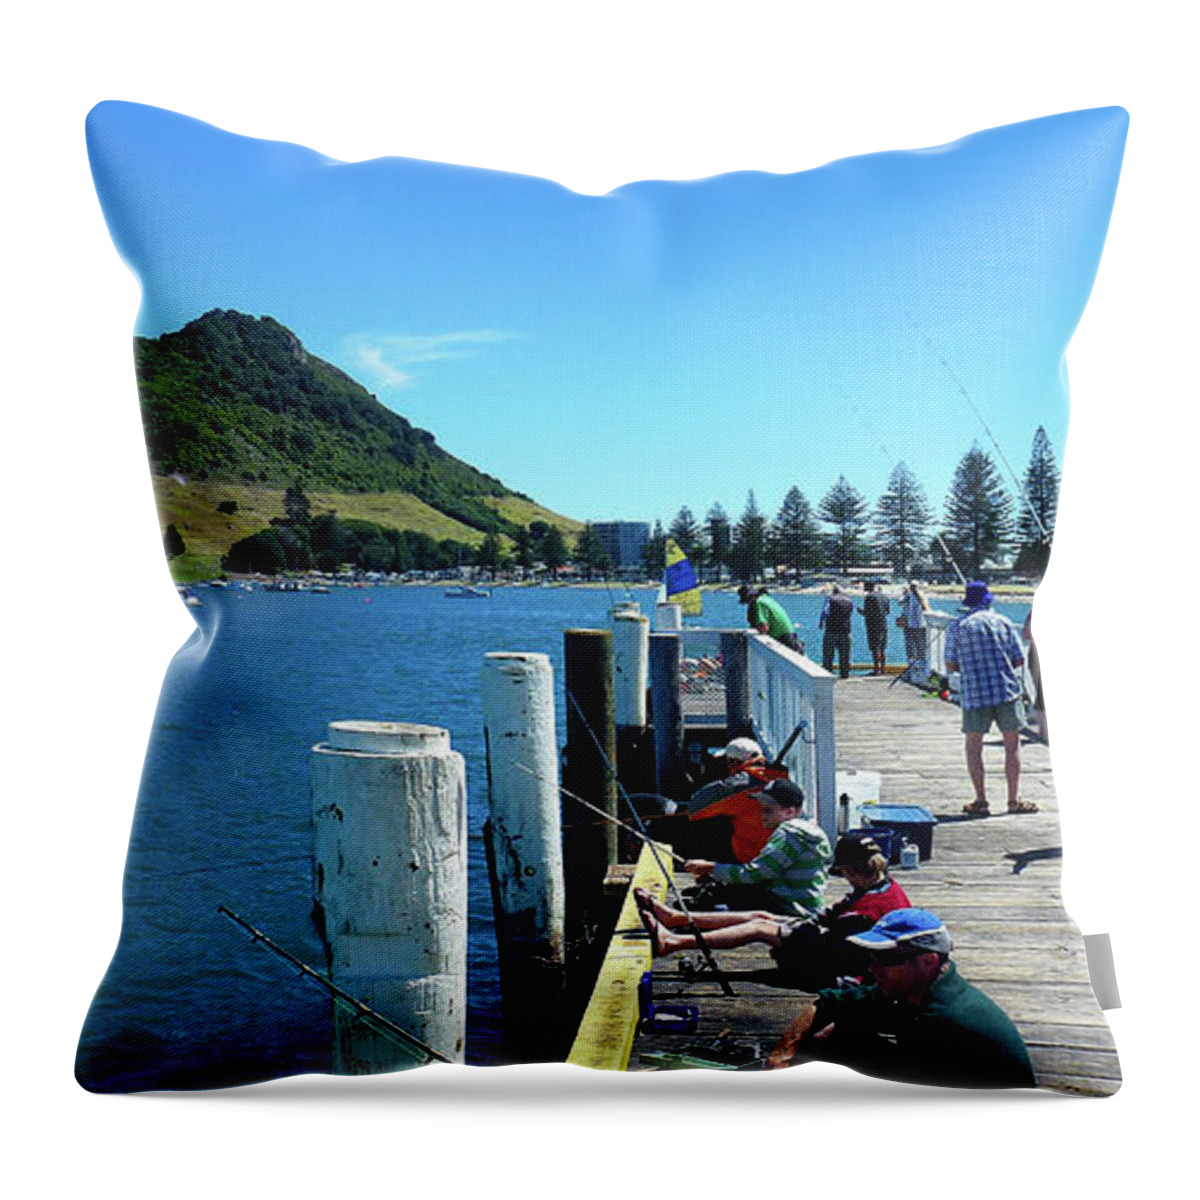 Pilot Bay Throw Pillow featuring the photograph Pilot Bay Beach 8 - Mount Maunganui Tauranga New Zealand by Selena Boron